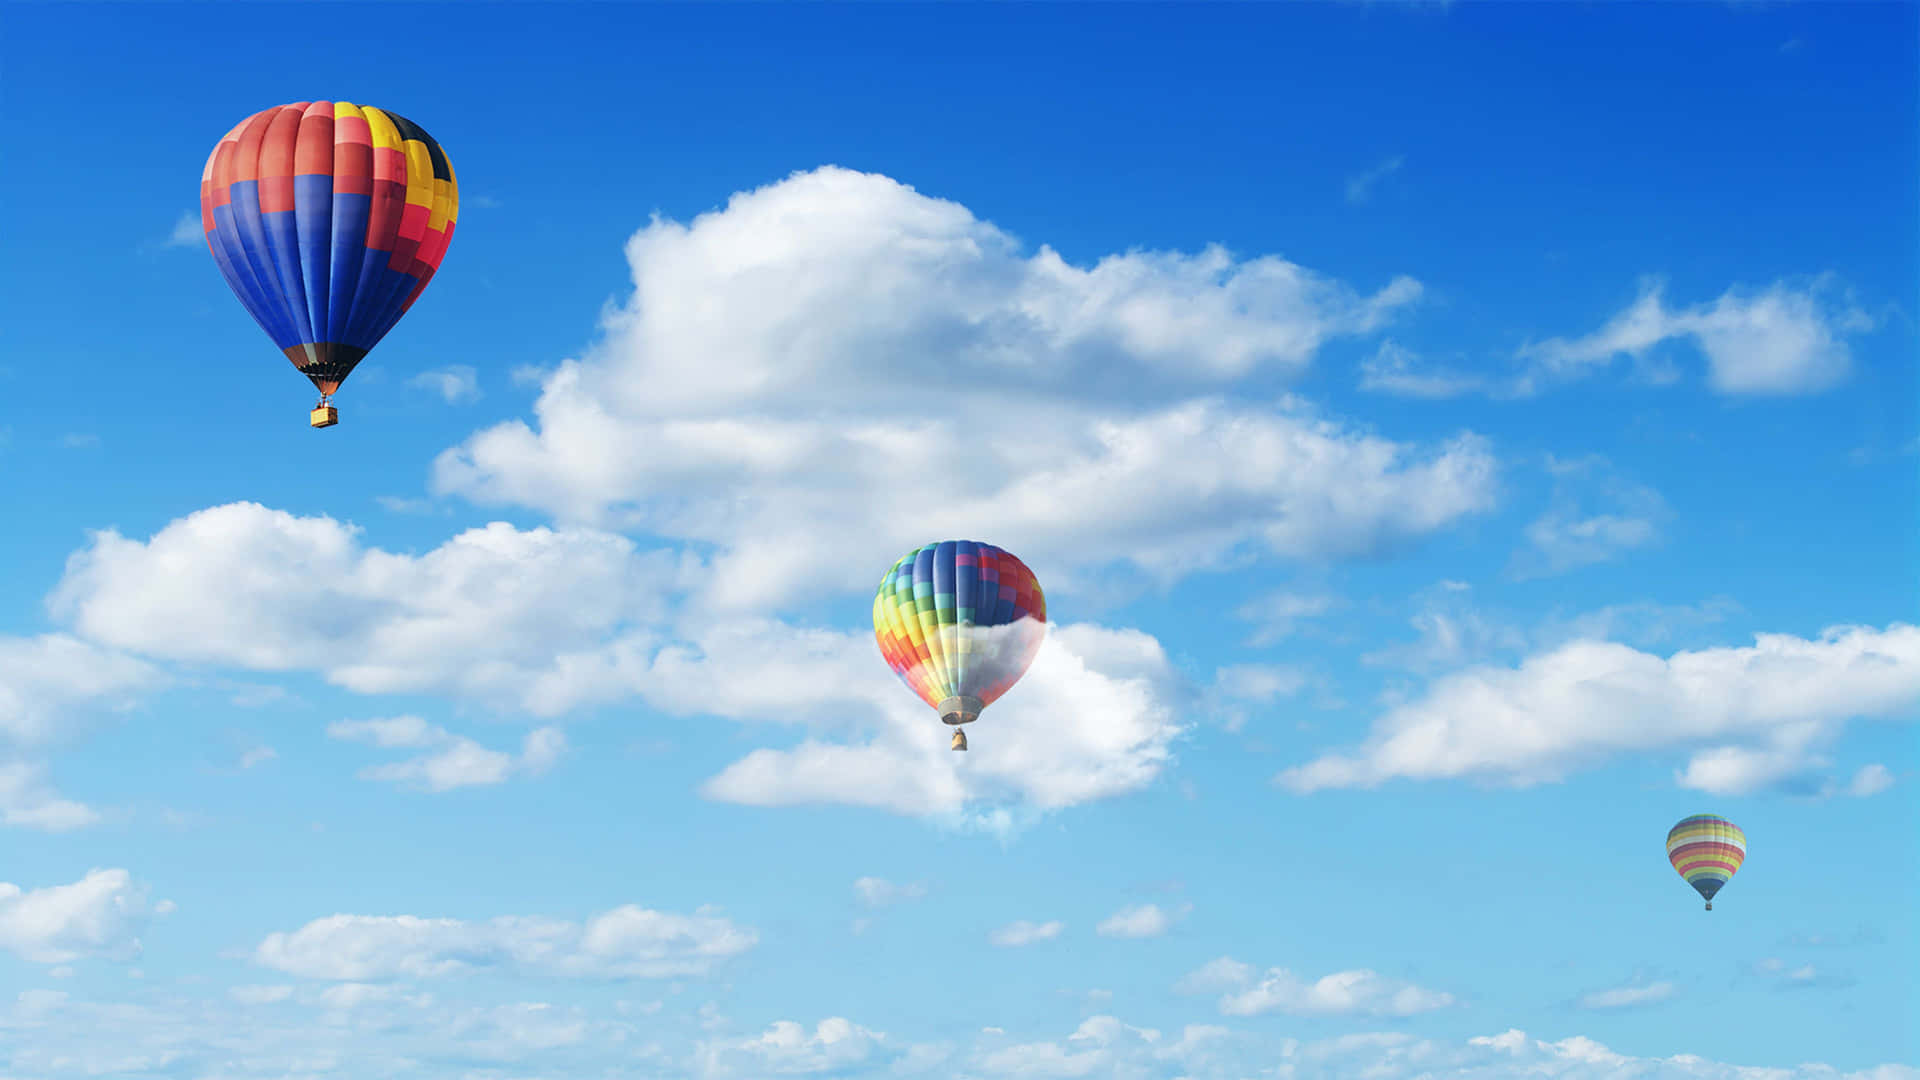 An incredible hot air balloon ride through the sky